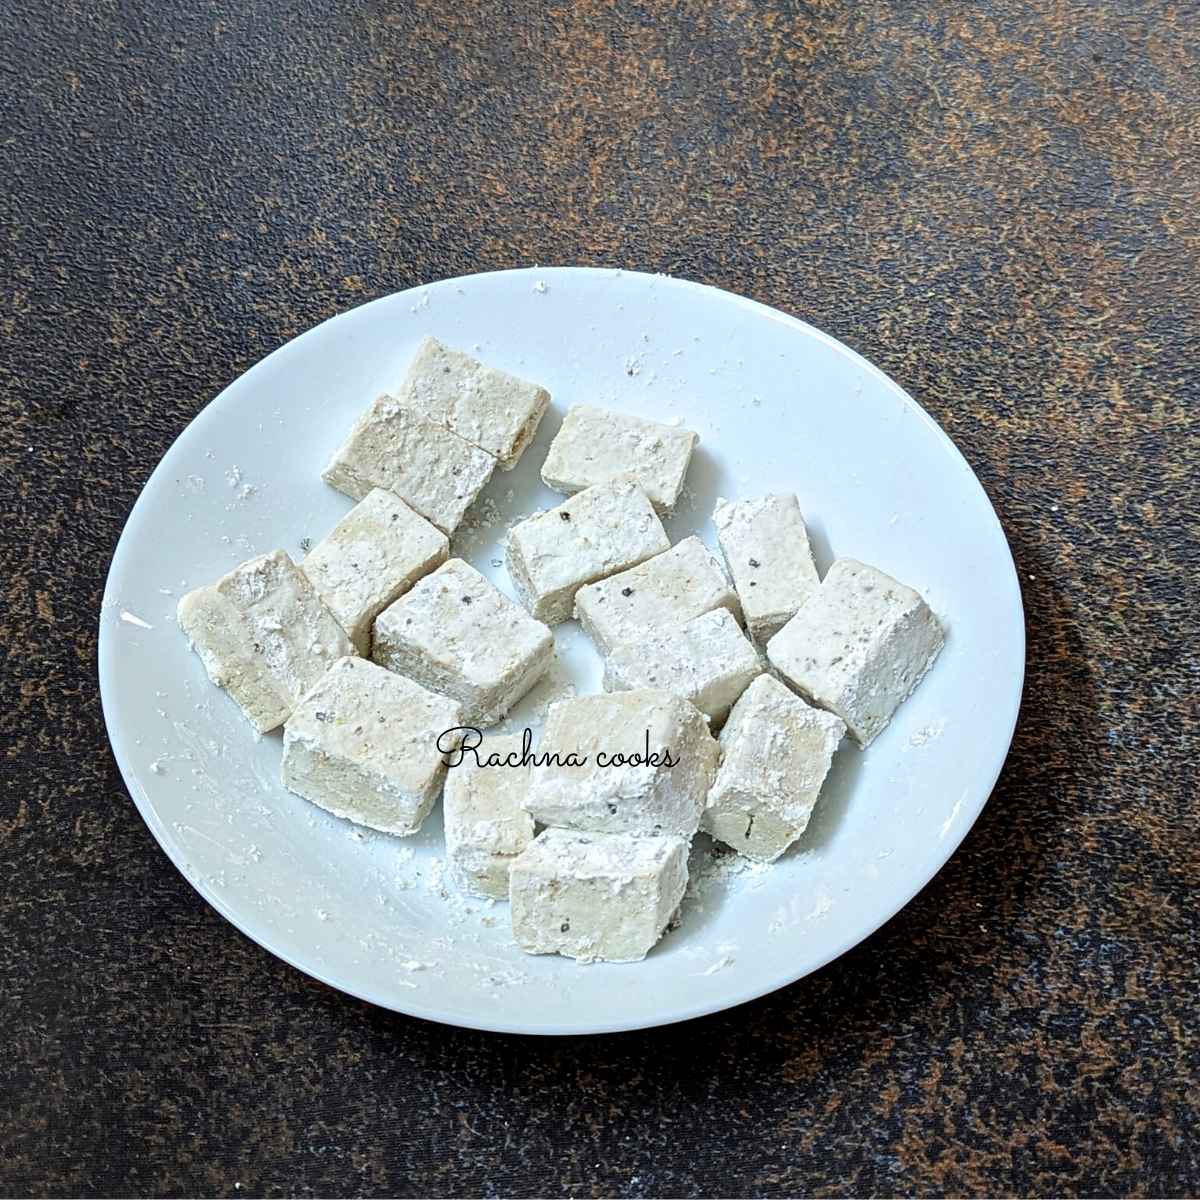 Tofu cubes coated in cornstarch, salt and pepper.